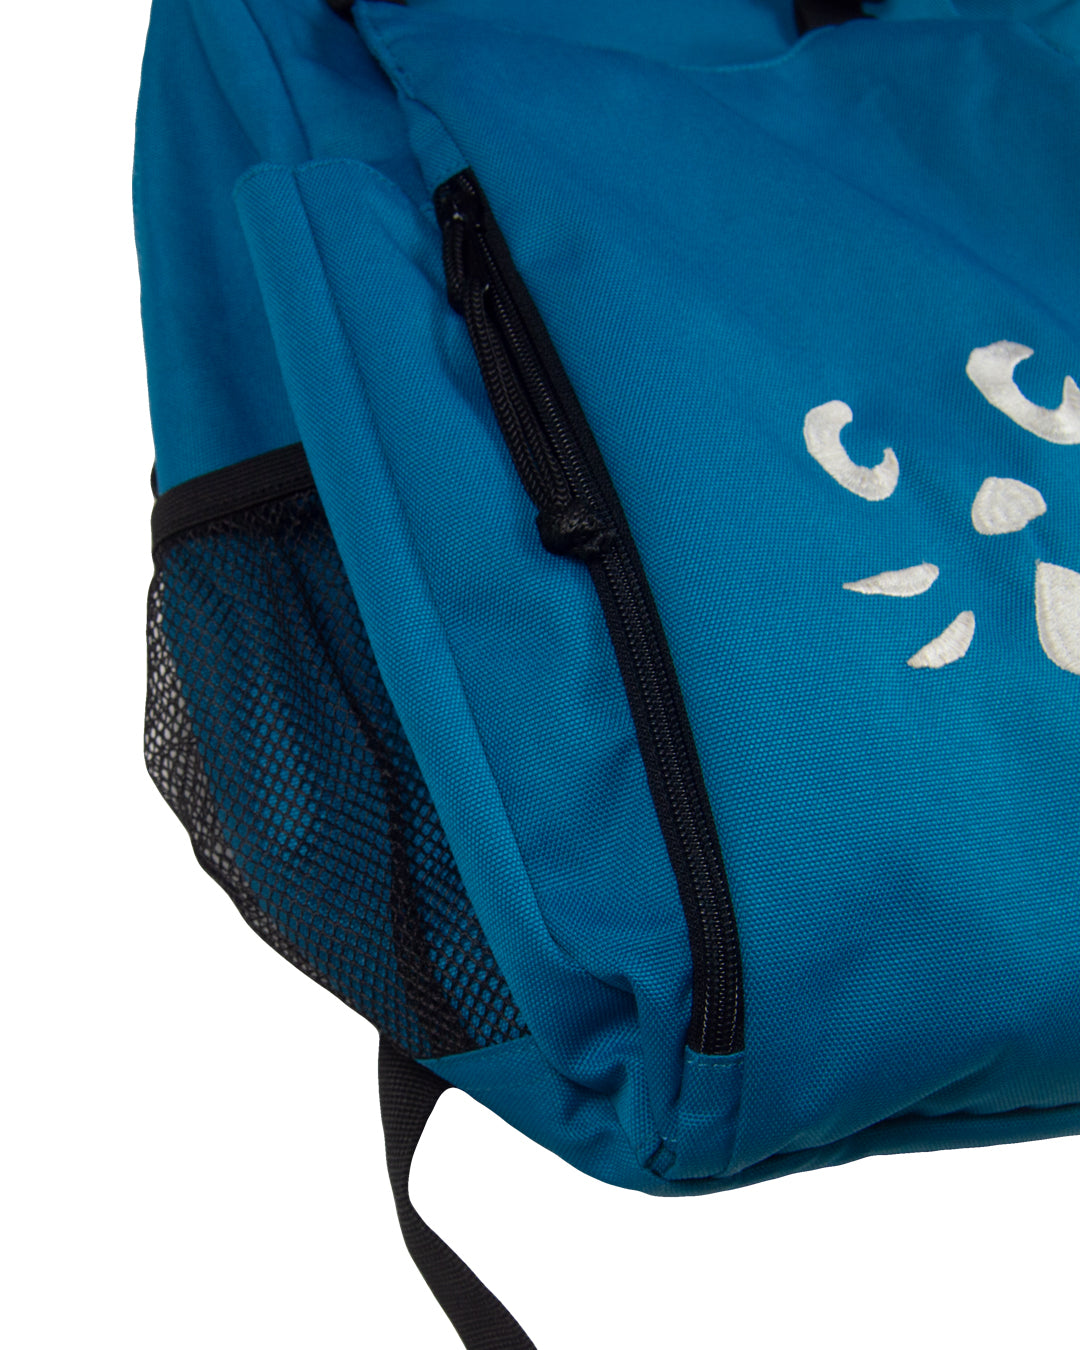 Né-Net Nya Functional Backpack